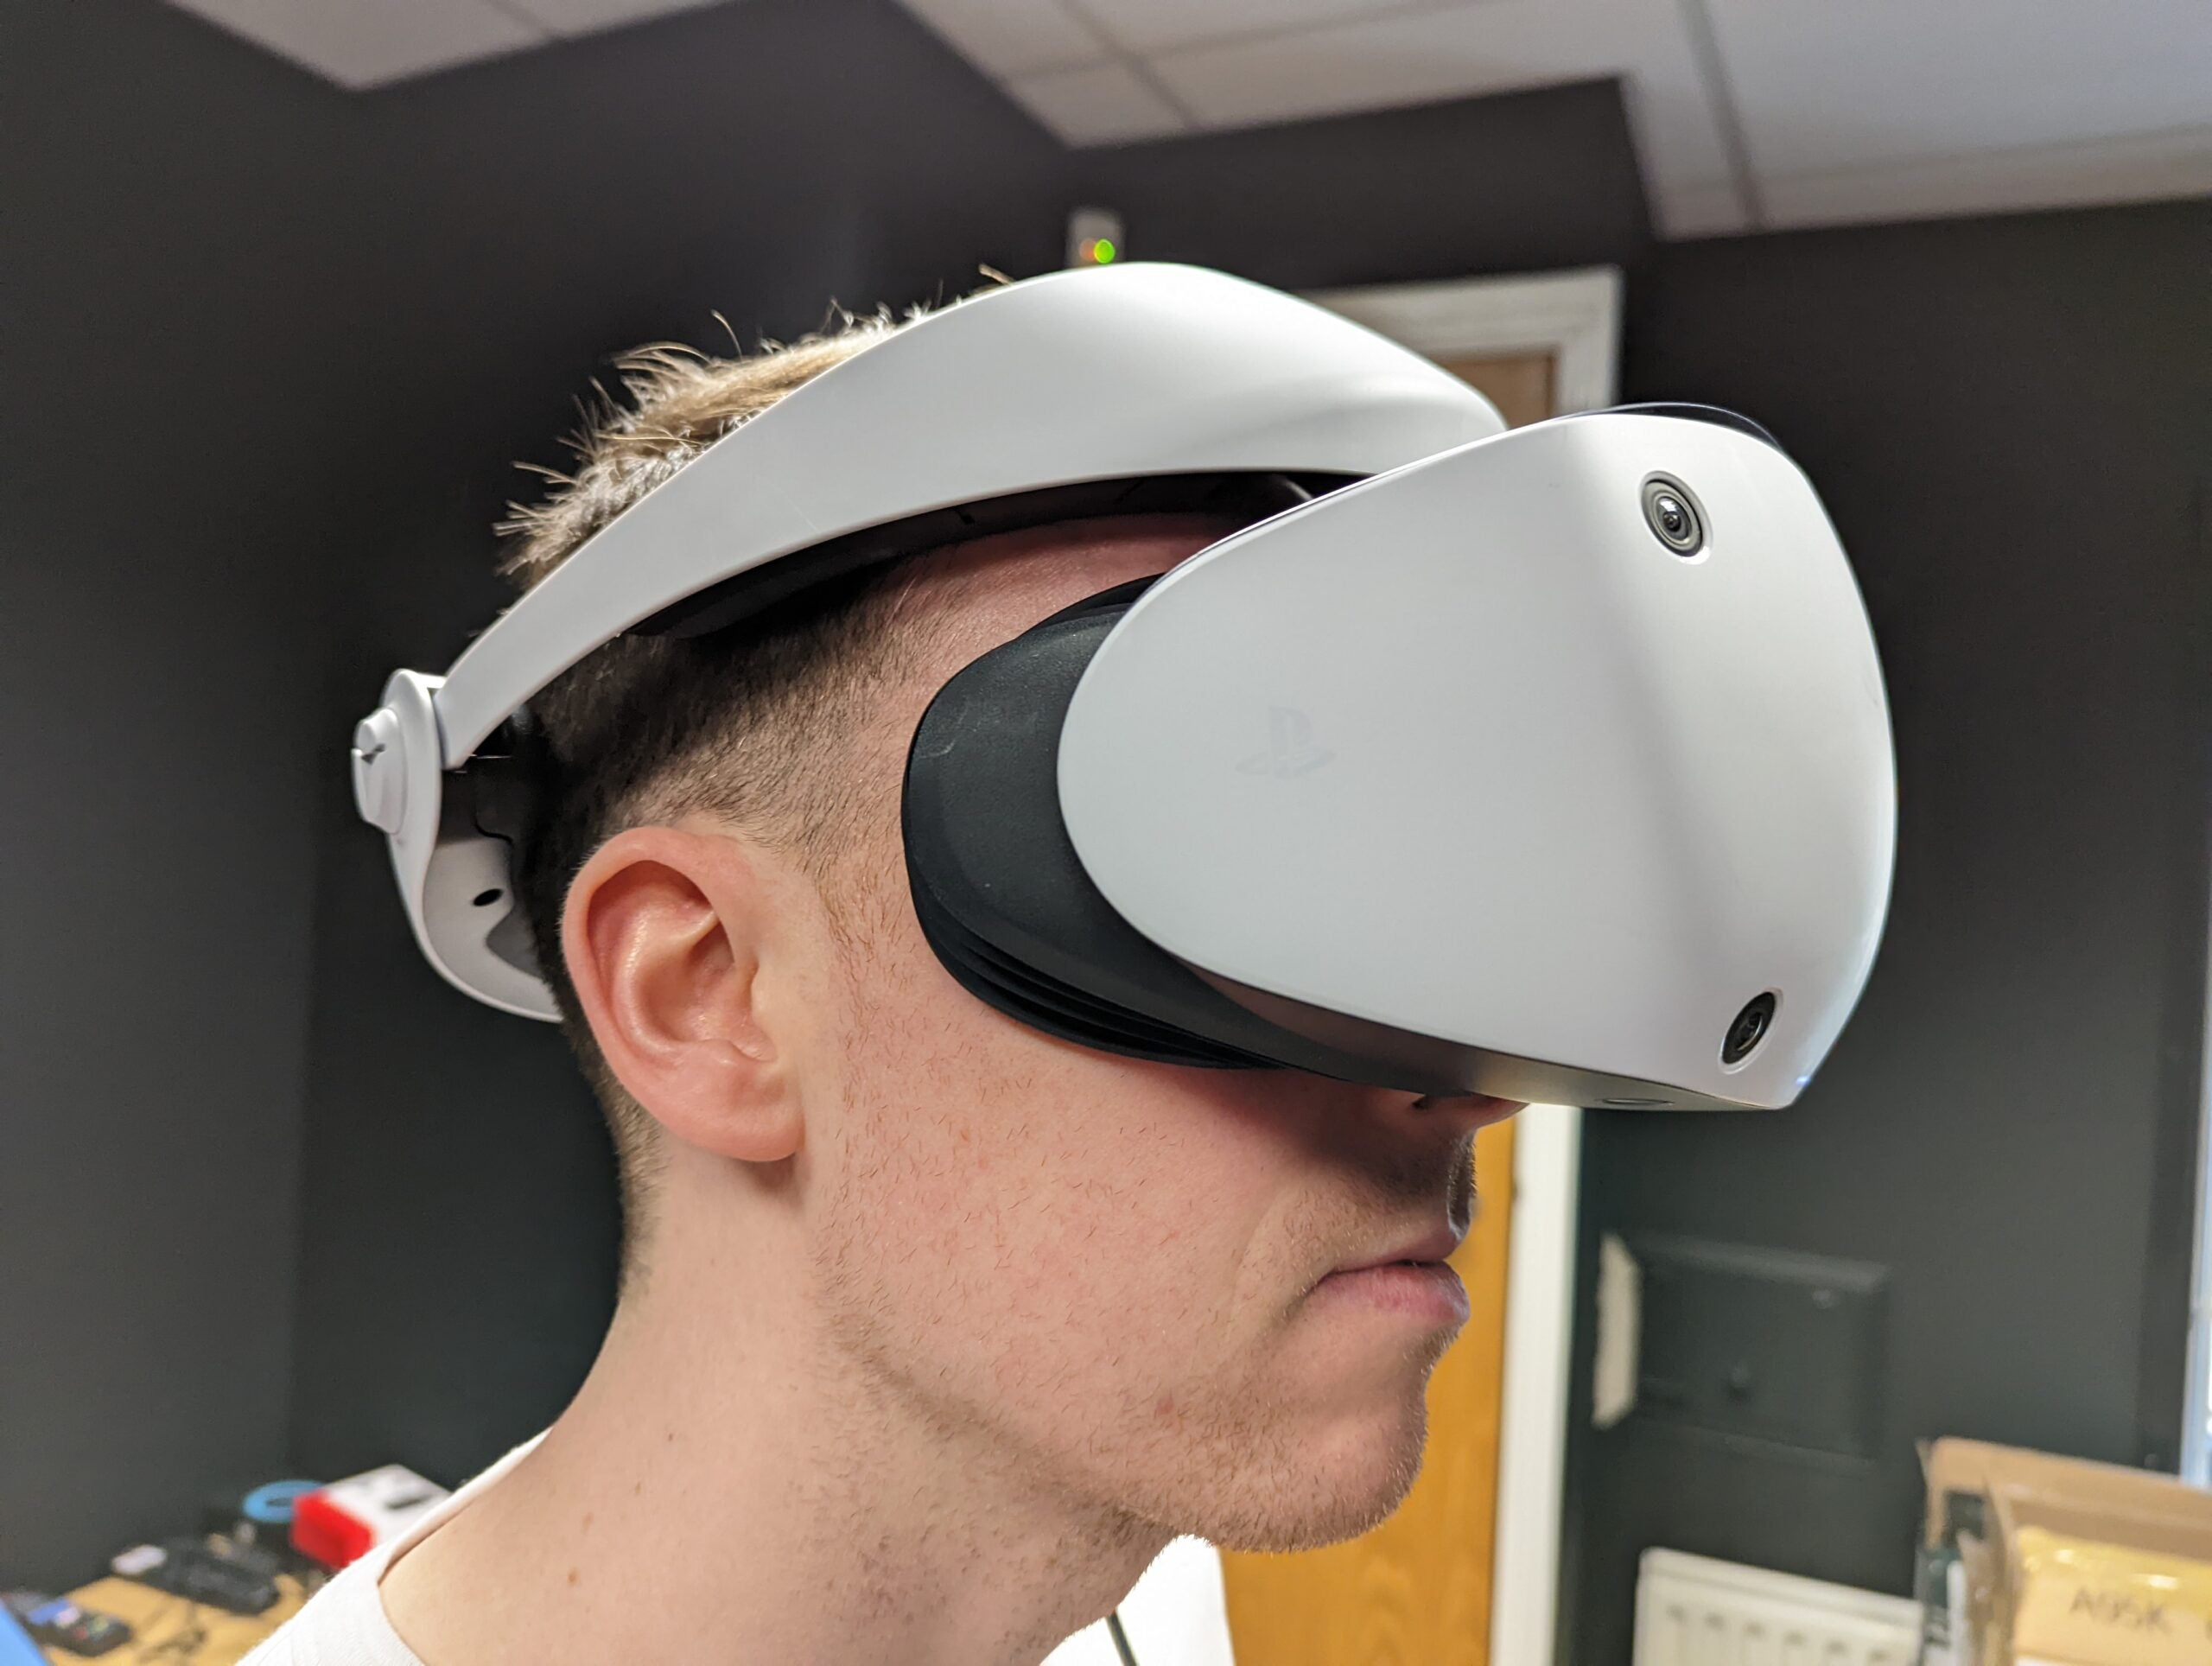 Πώς να ρυθμίσετε το eye tracking στο PlayStation VR 2